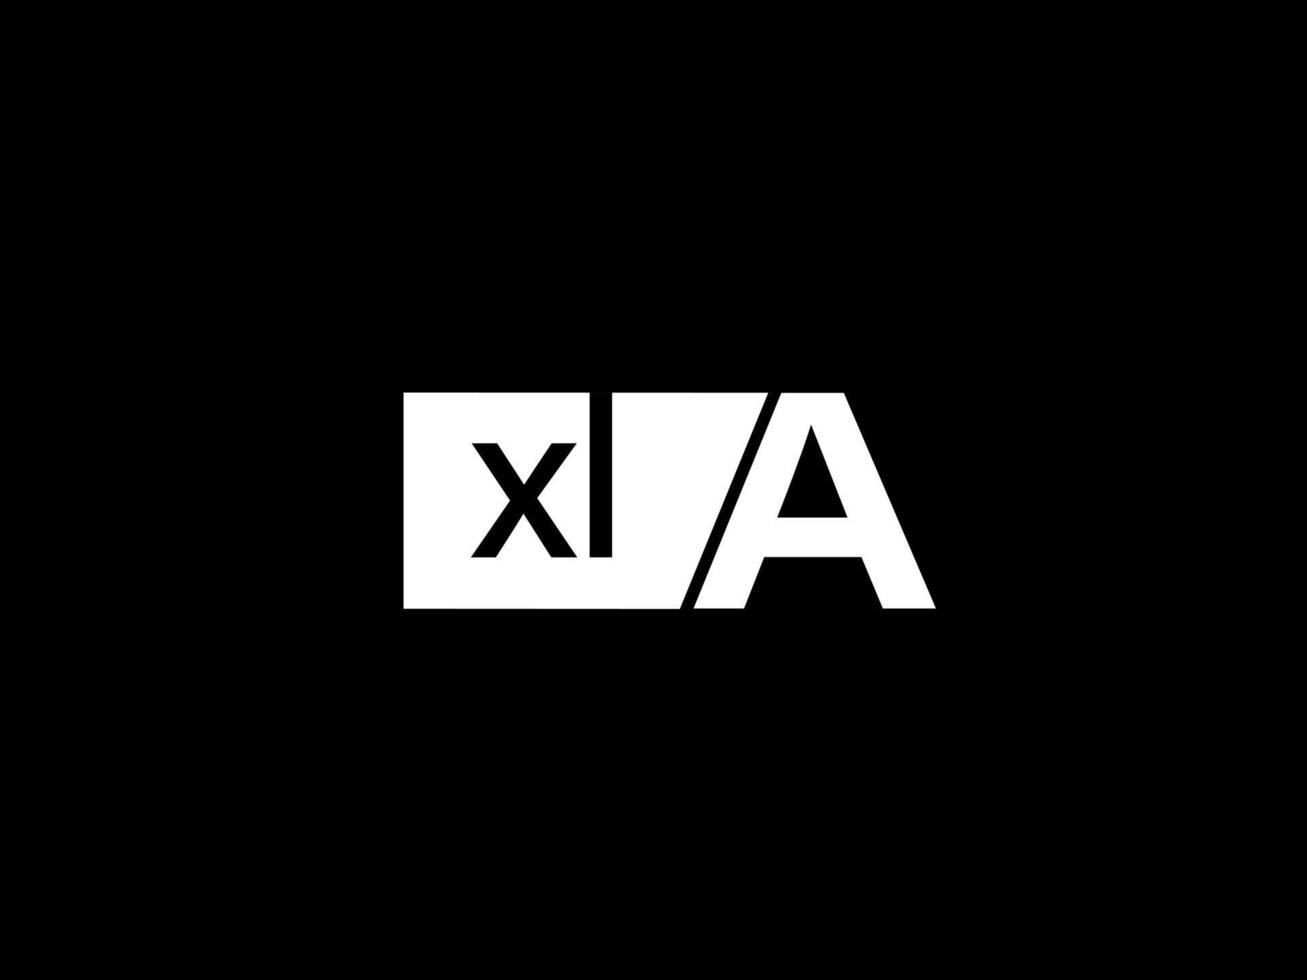 xla-Logo und Grafikdesign Vektorgrafiken, Symbole isoliert auf schwarzem Hintergrund vektor